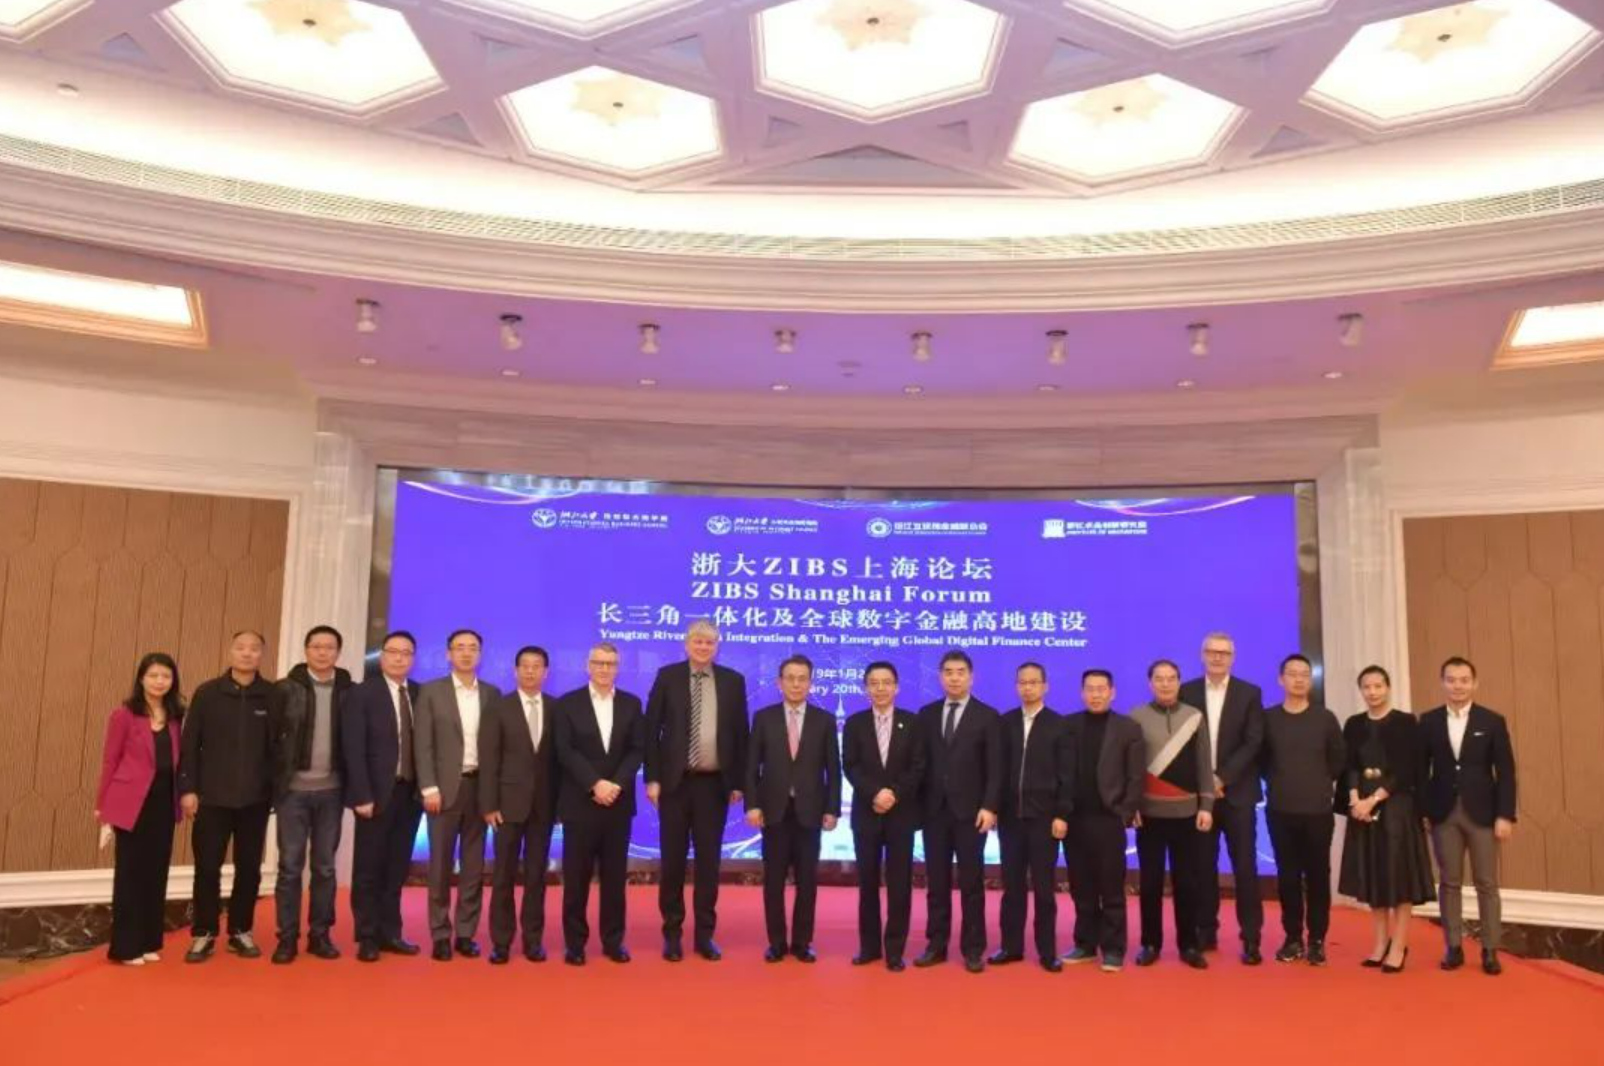 2019年 ZIBS上海论坛——长三角一体化及全球数字金融高地建设论坛